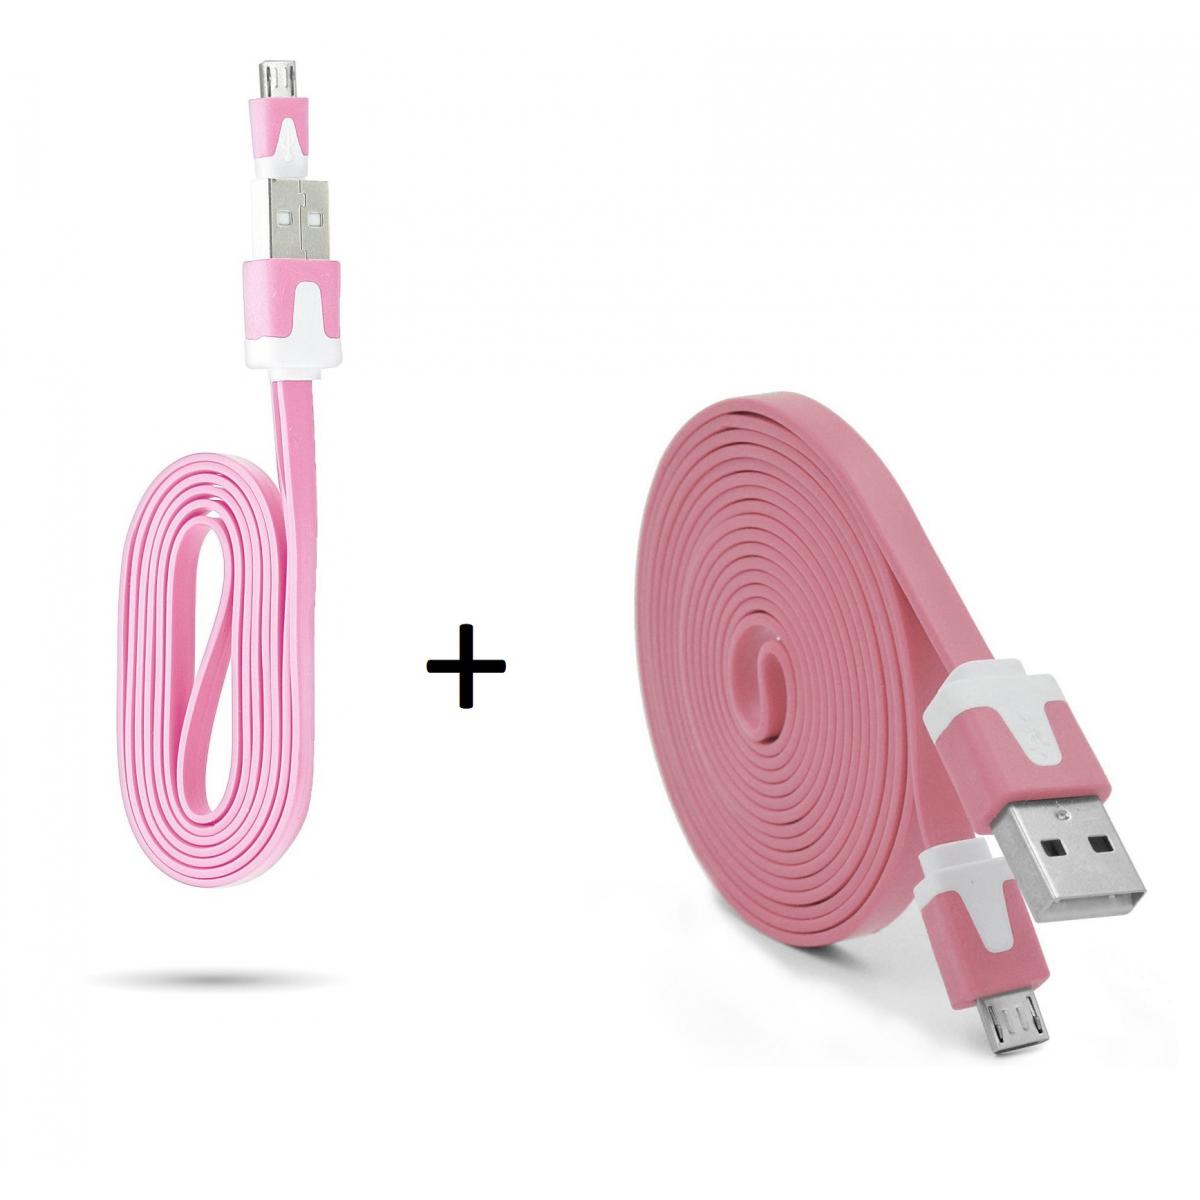 Shot - Pack Chargeur pour JBL GO 2 Smartphone Micro USB (Cable Noodle 3m + Cable Noodle 1m) Android (ROSE) - Chargeur secteur téléphone